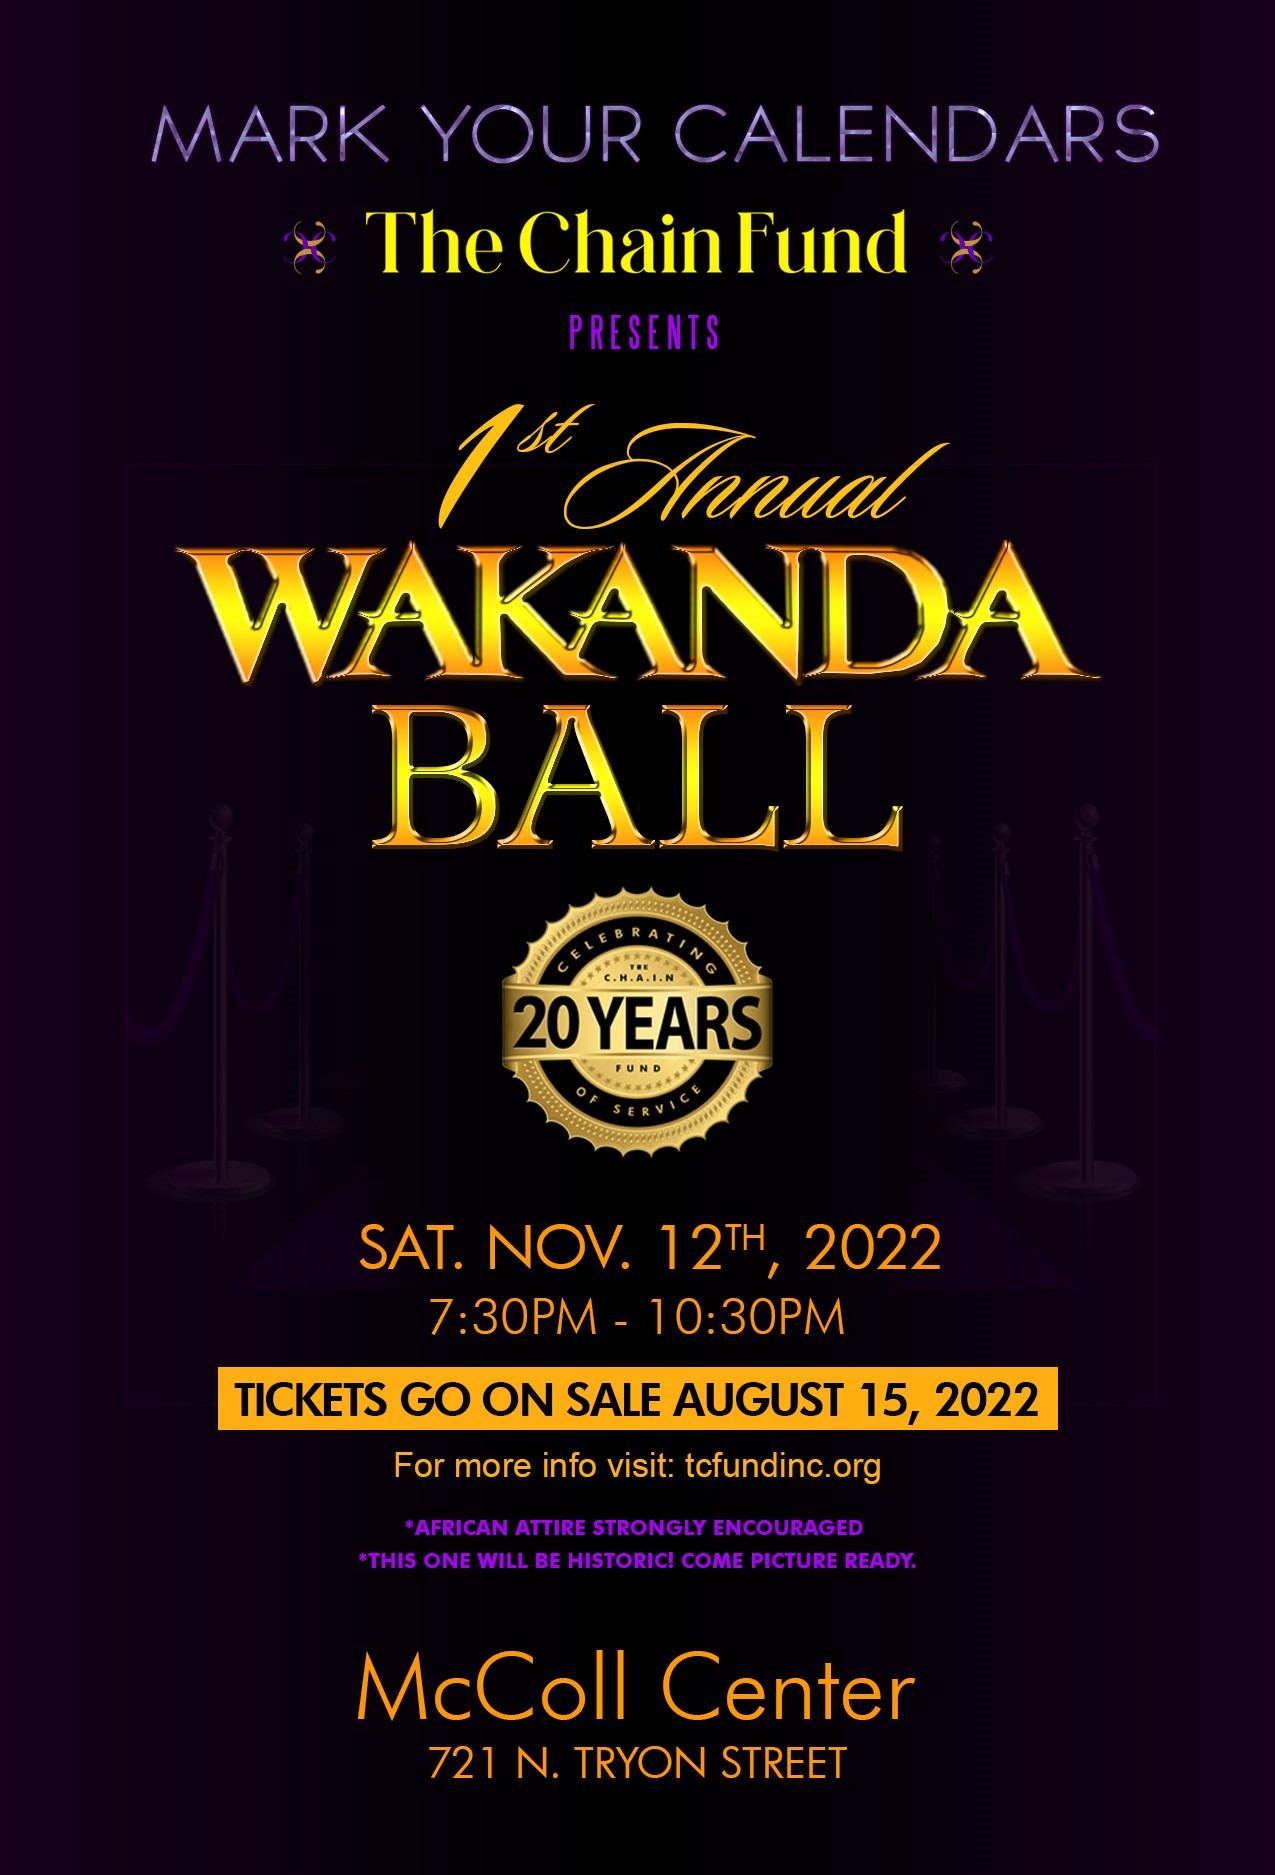 WakandaForeverBall  on Nov 12, 19:30@McColl Center - Compra entradas y obtén información entcfundinc.org 